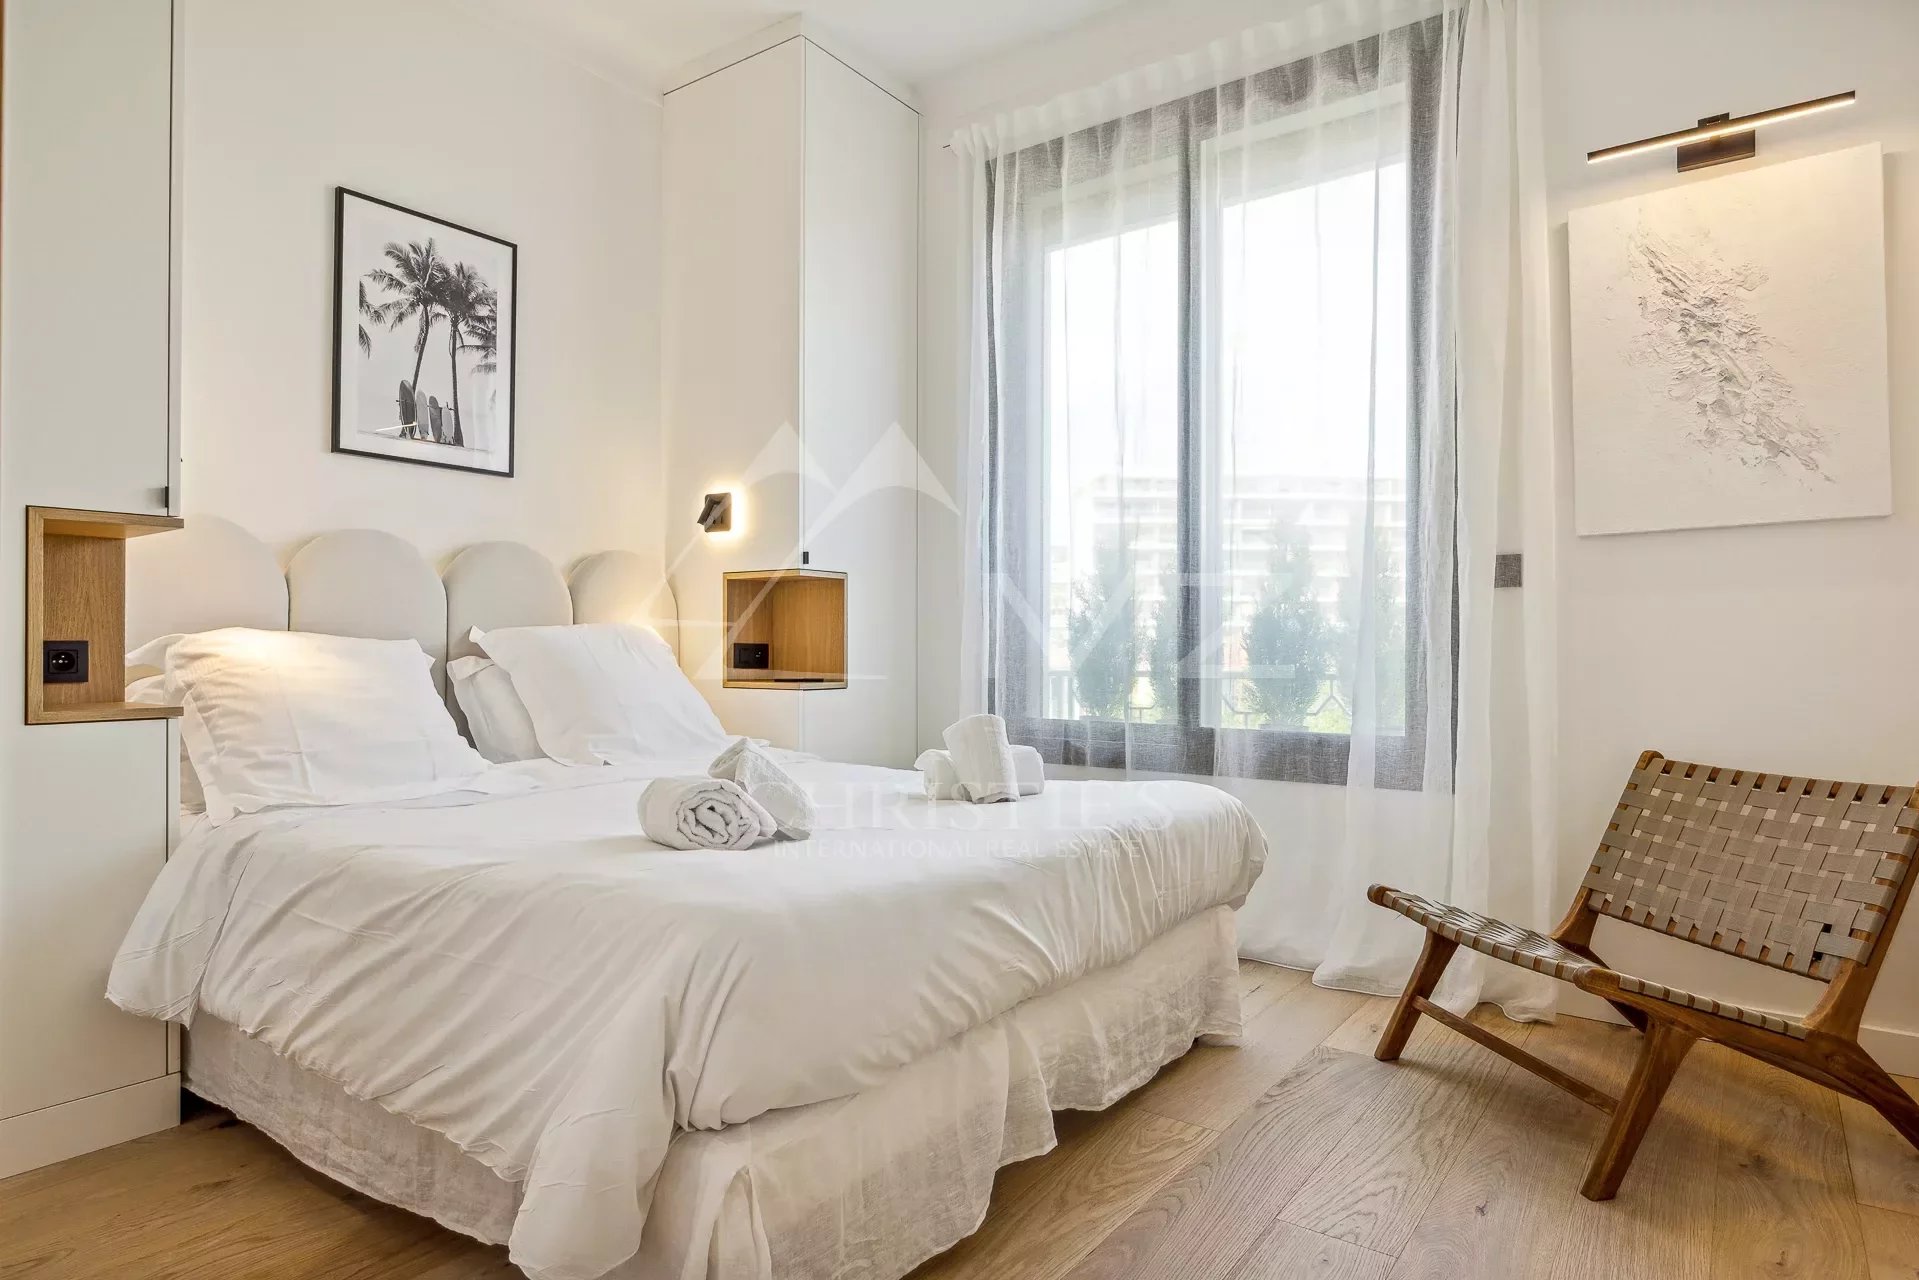 Cannes Croisette - 3 bedrooms apartment